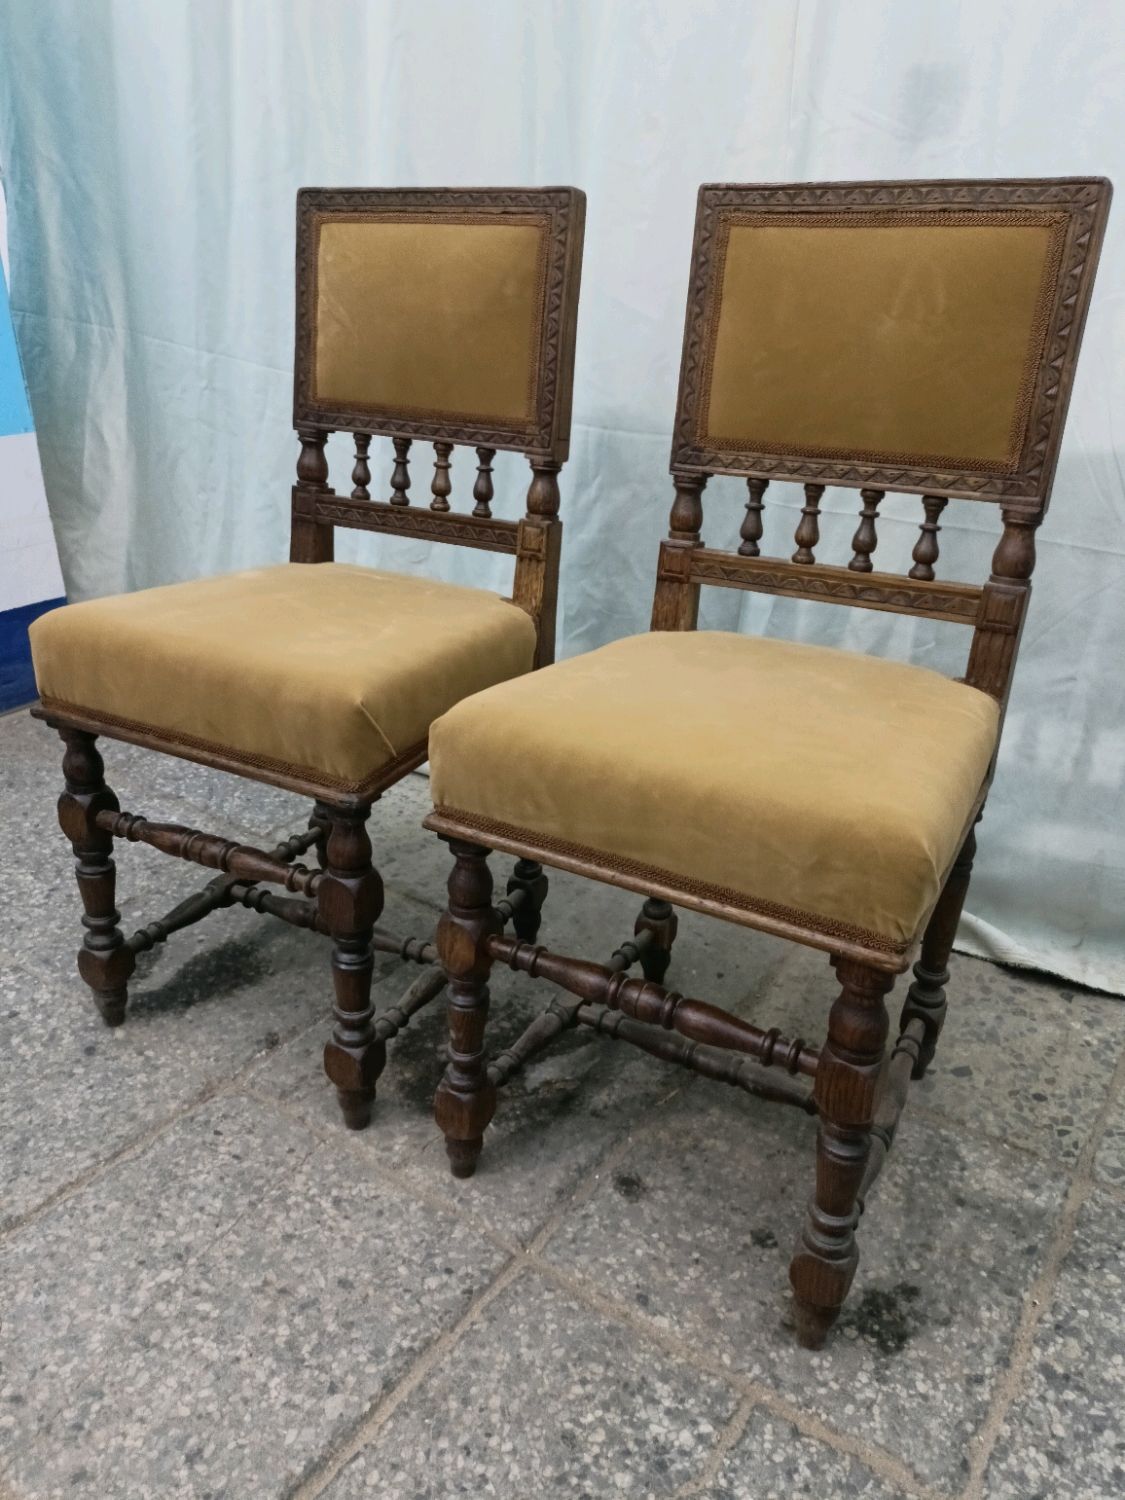 Продать старую мебель в ташкенте